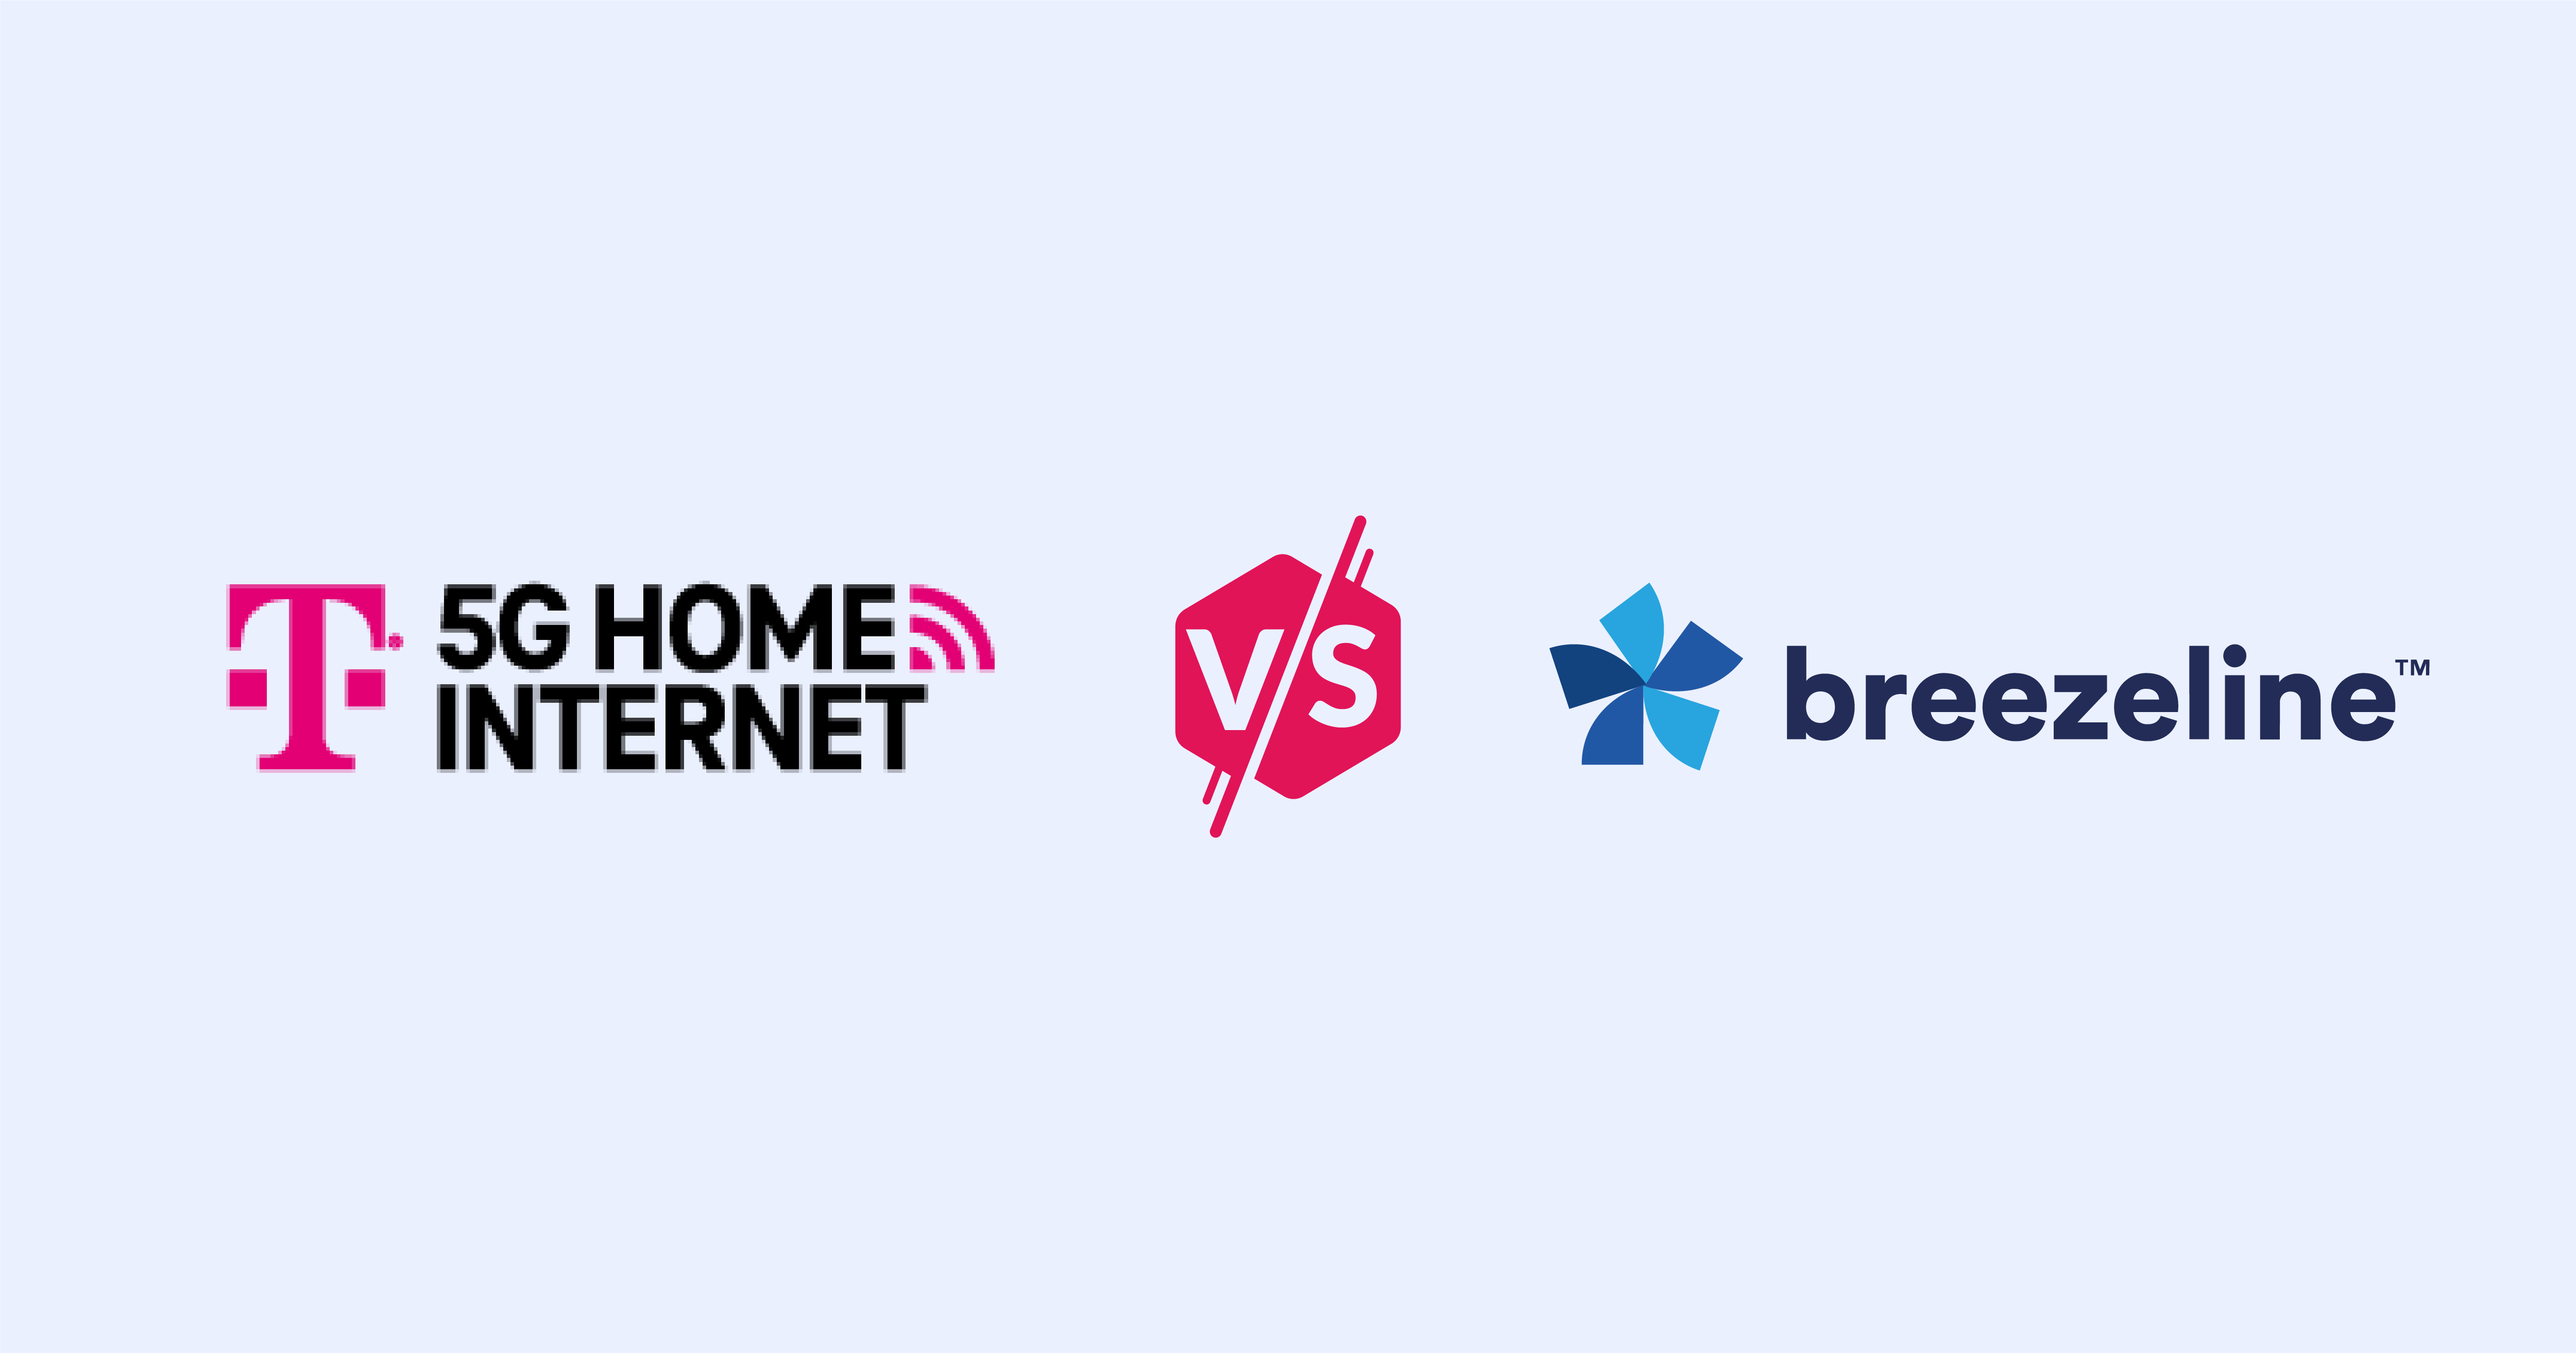 T-Mobile Home Internet versus Breezeline